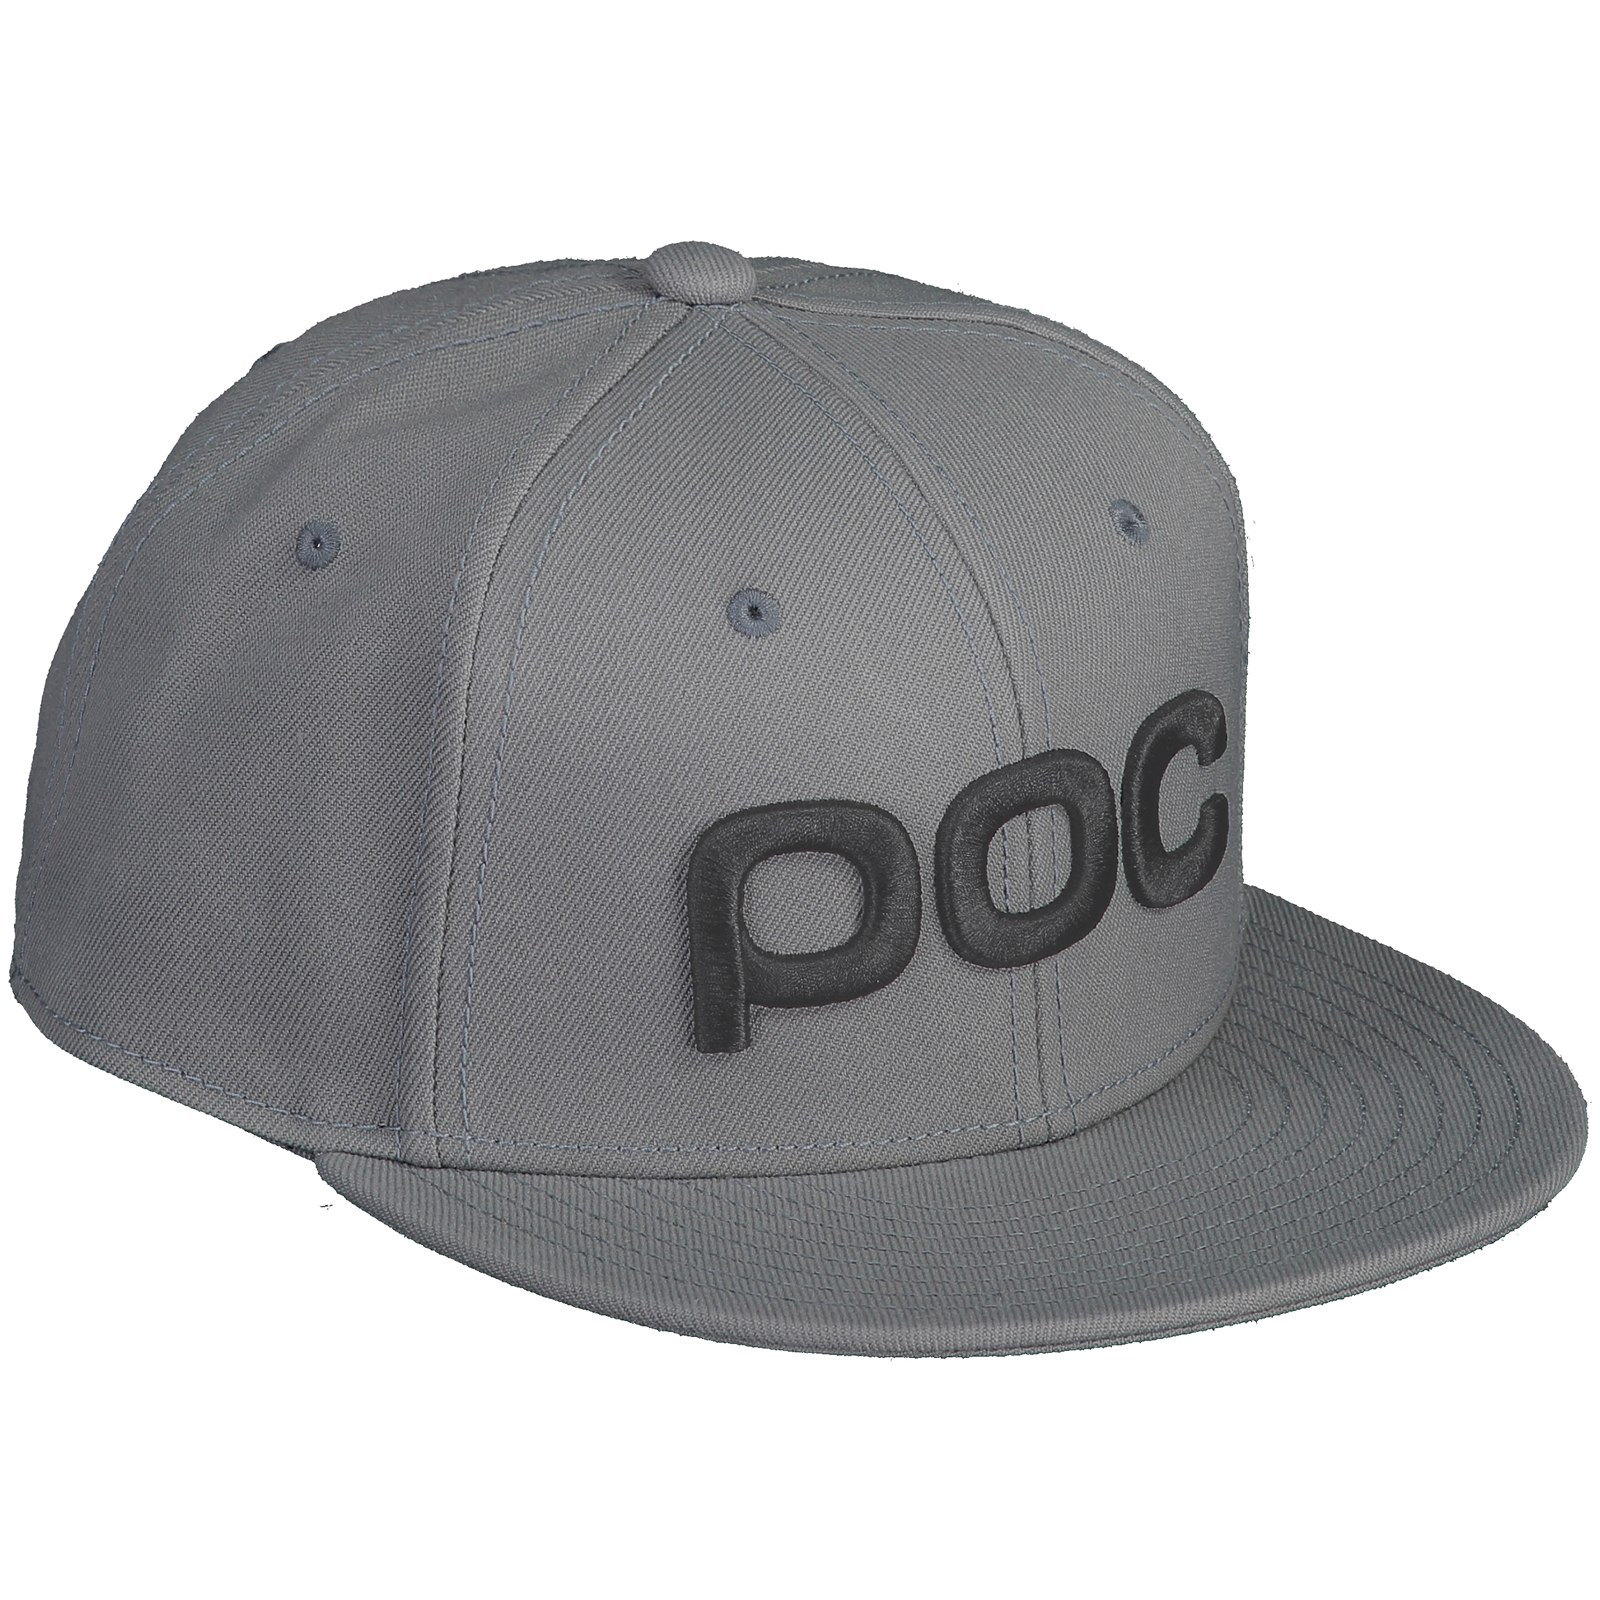 Produktbild von POC Corp Cap - 1041 Pegasi Grey